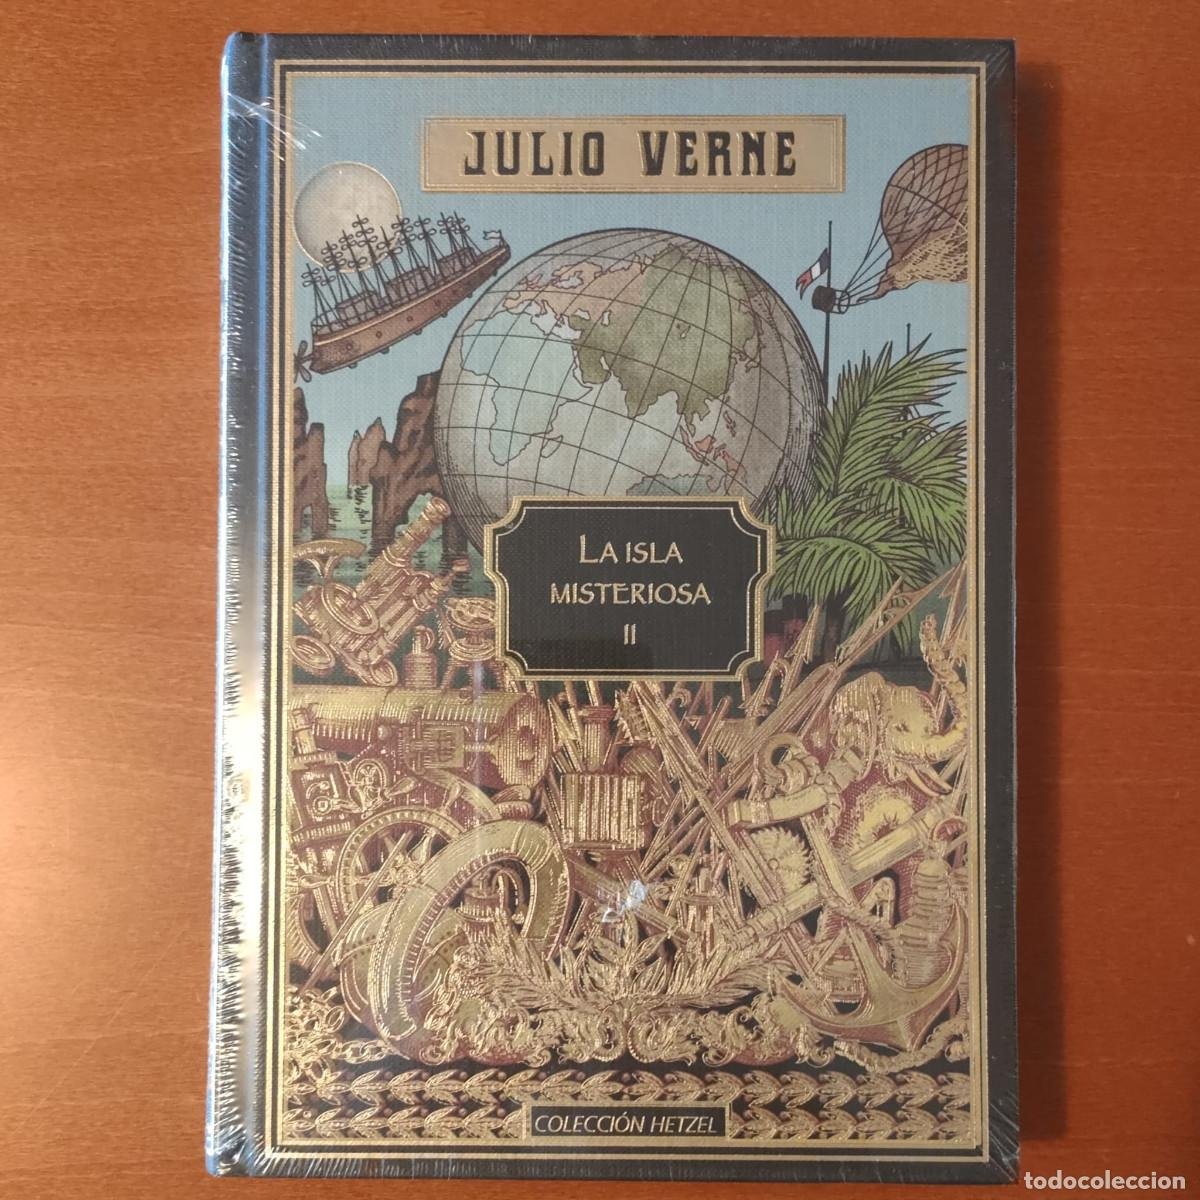 Lote 489926692: Novela Julio Verne La isla misteriosa (II) El abandonado Colección Hetzel